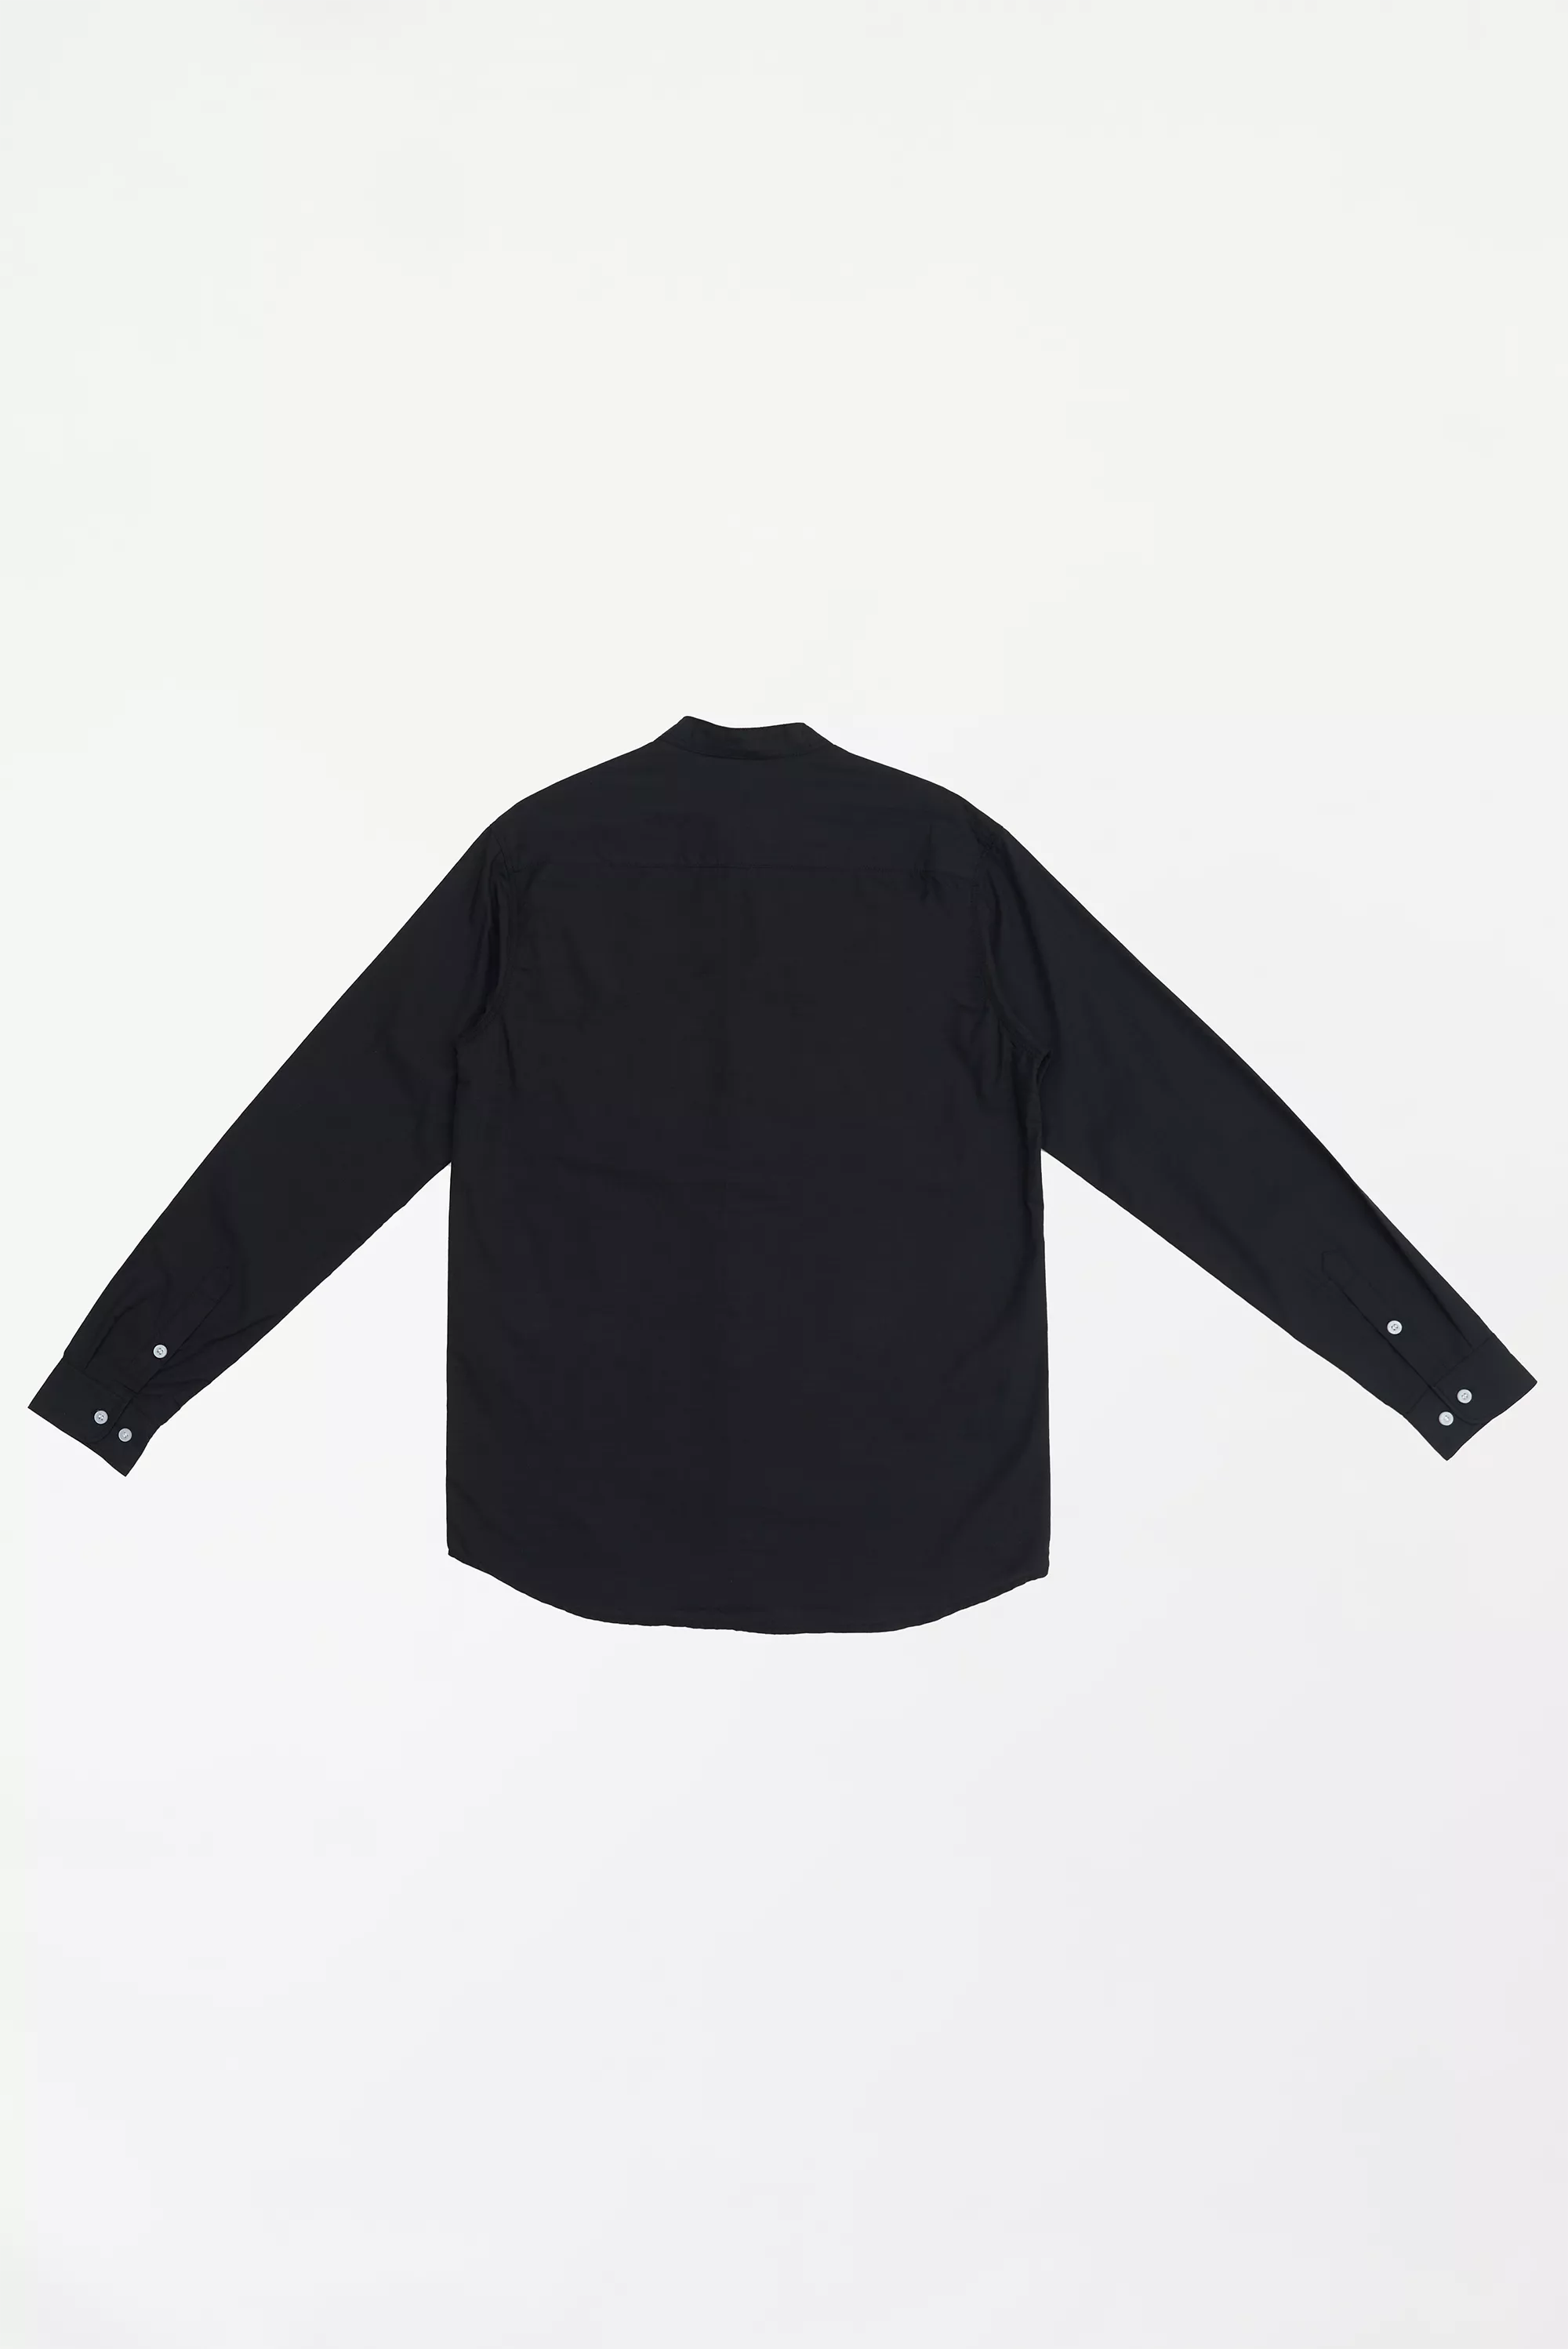 Men's Textured Button-Up Shirt Black